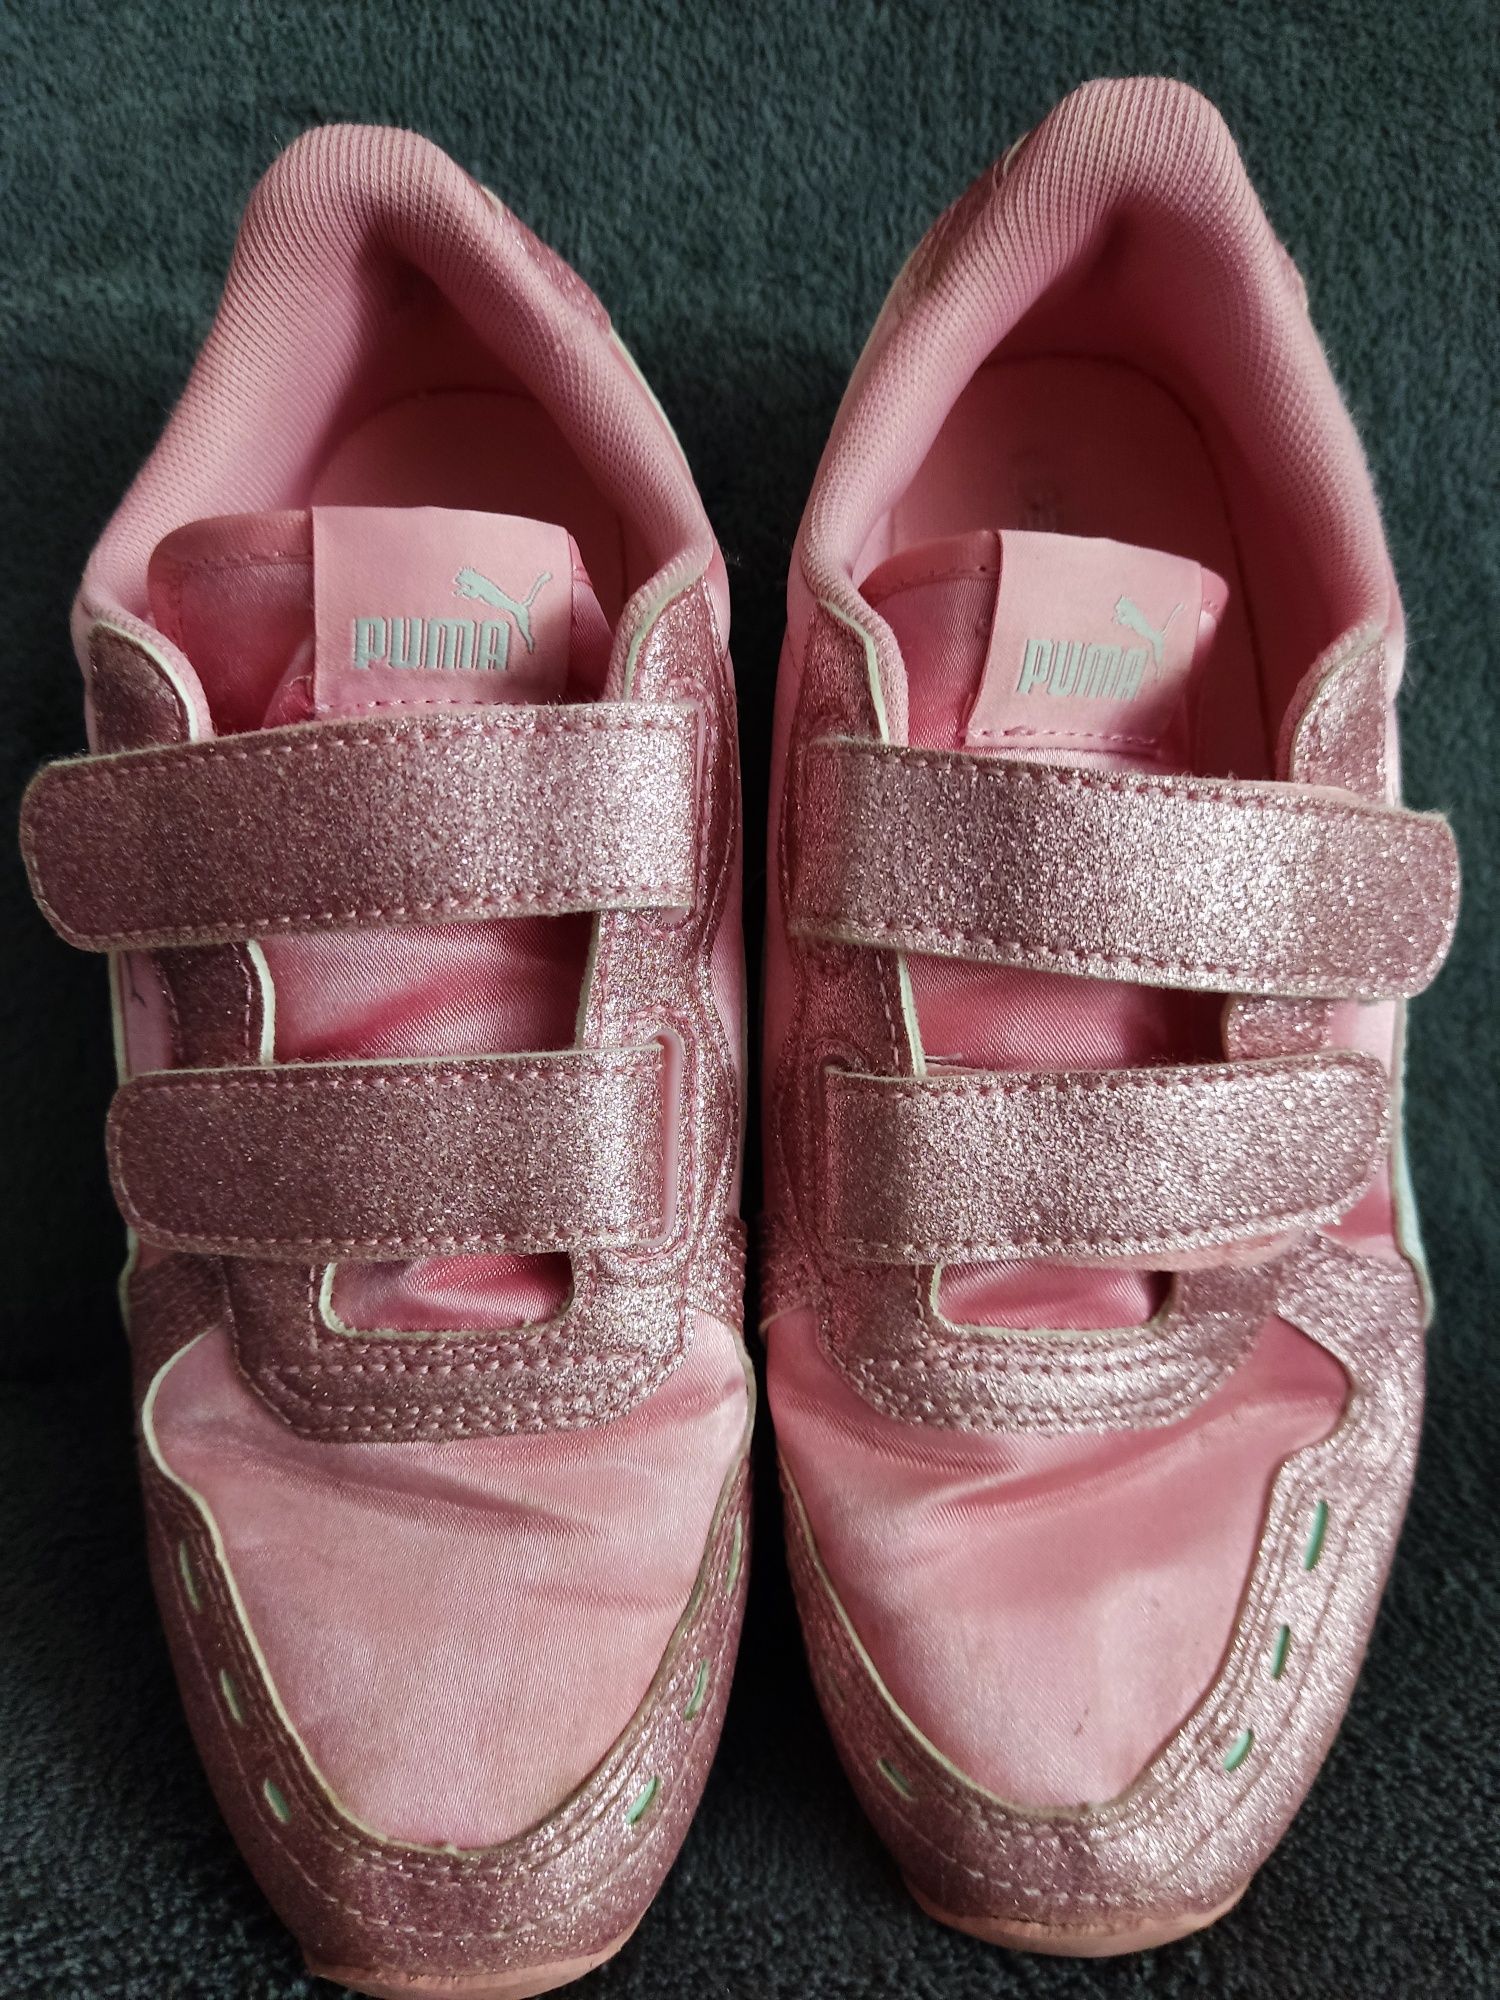 Pantofi sport femei/adidași Puma copii roz-mar.34